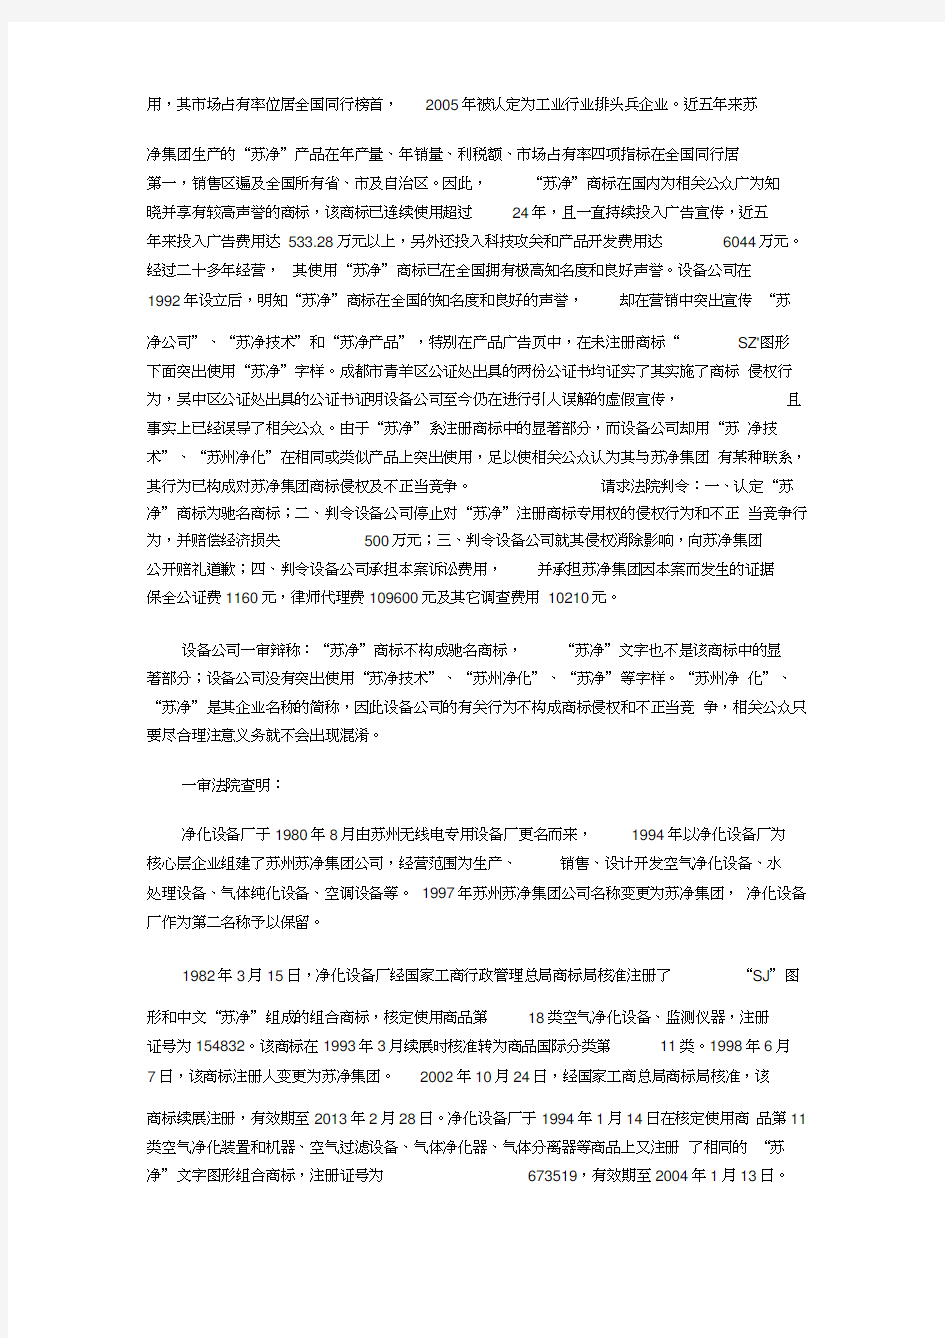 (竞争策略)与江苏苏净集团有限公司商标权侵权及不正当竞争纠纷案